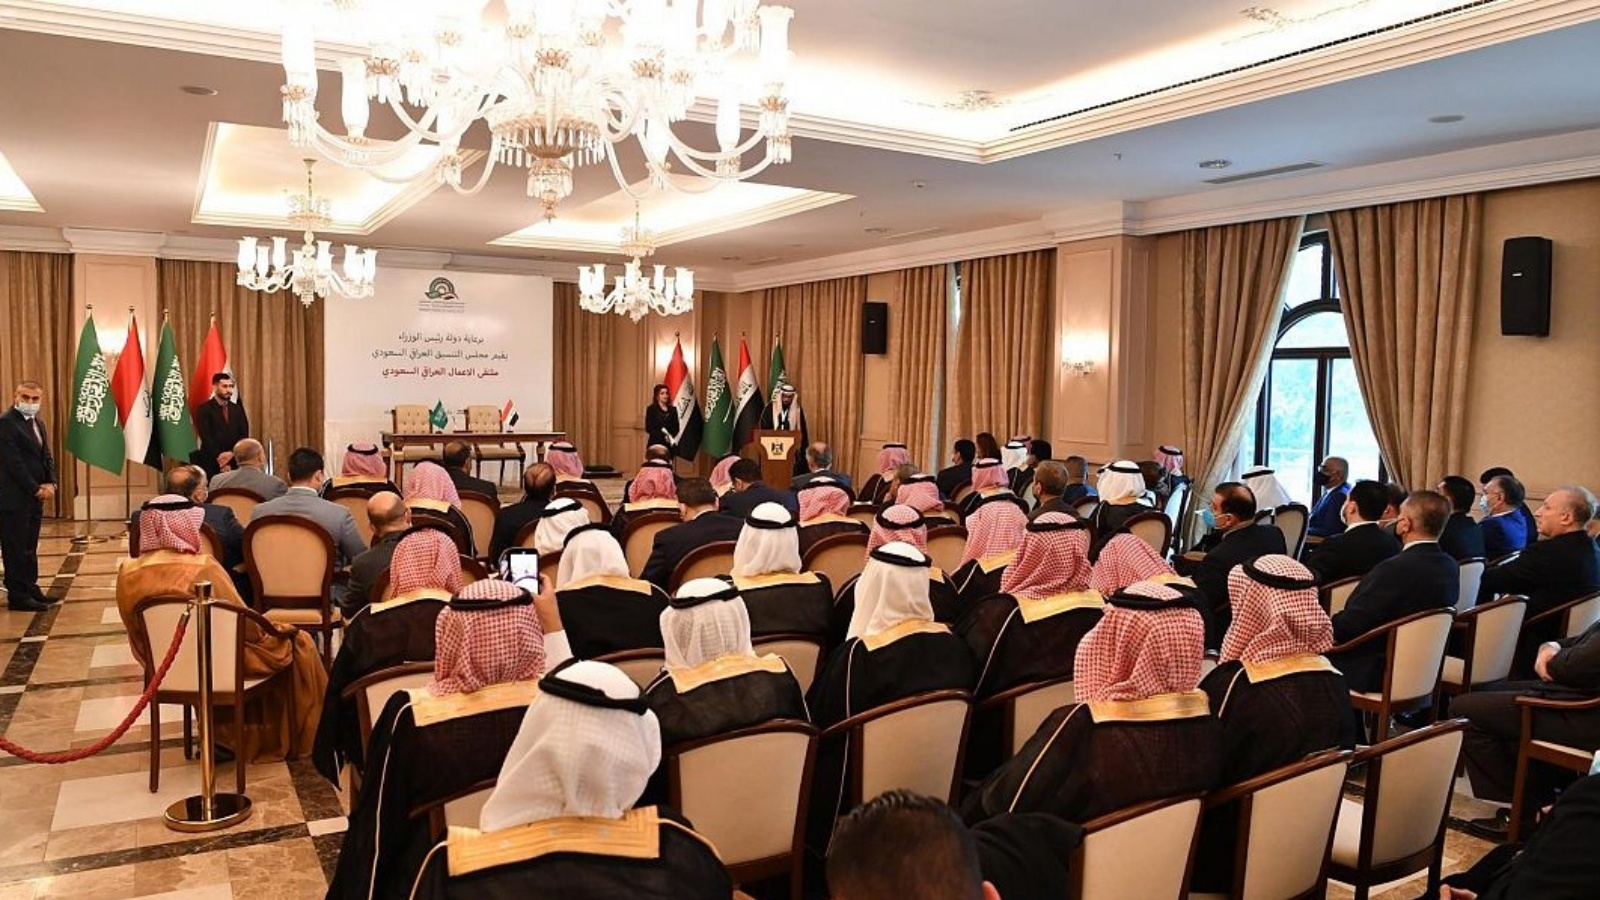 ملتقى الأعمال العراقي - السعودي بحضور وزراء ومسؤولين اقتصاديين من البلدين بغداد في السابع من ديسمبر عام 2020